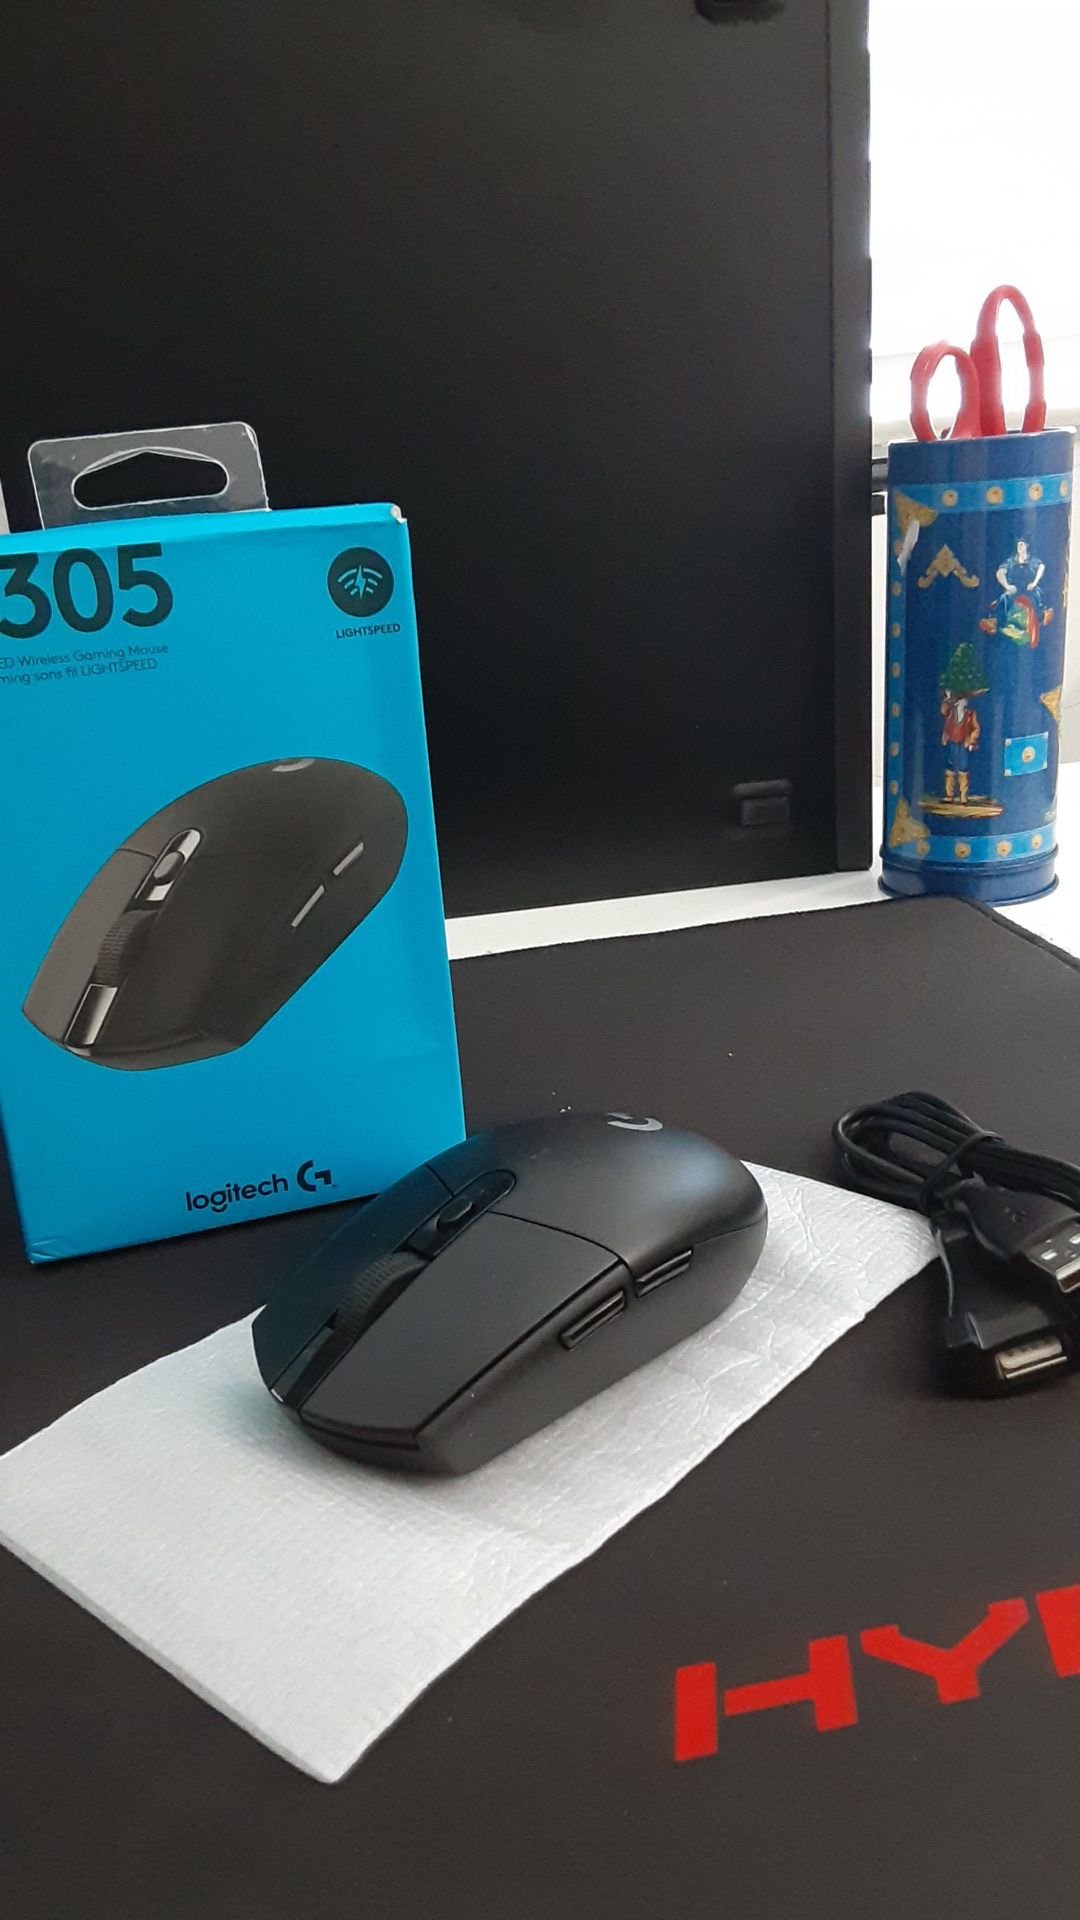 G305 logitech mouse